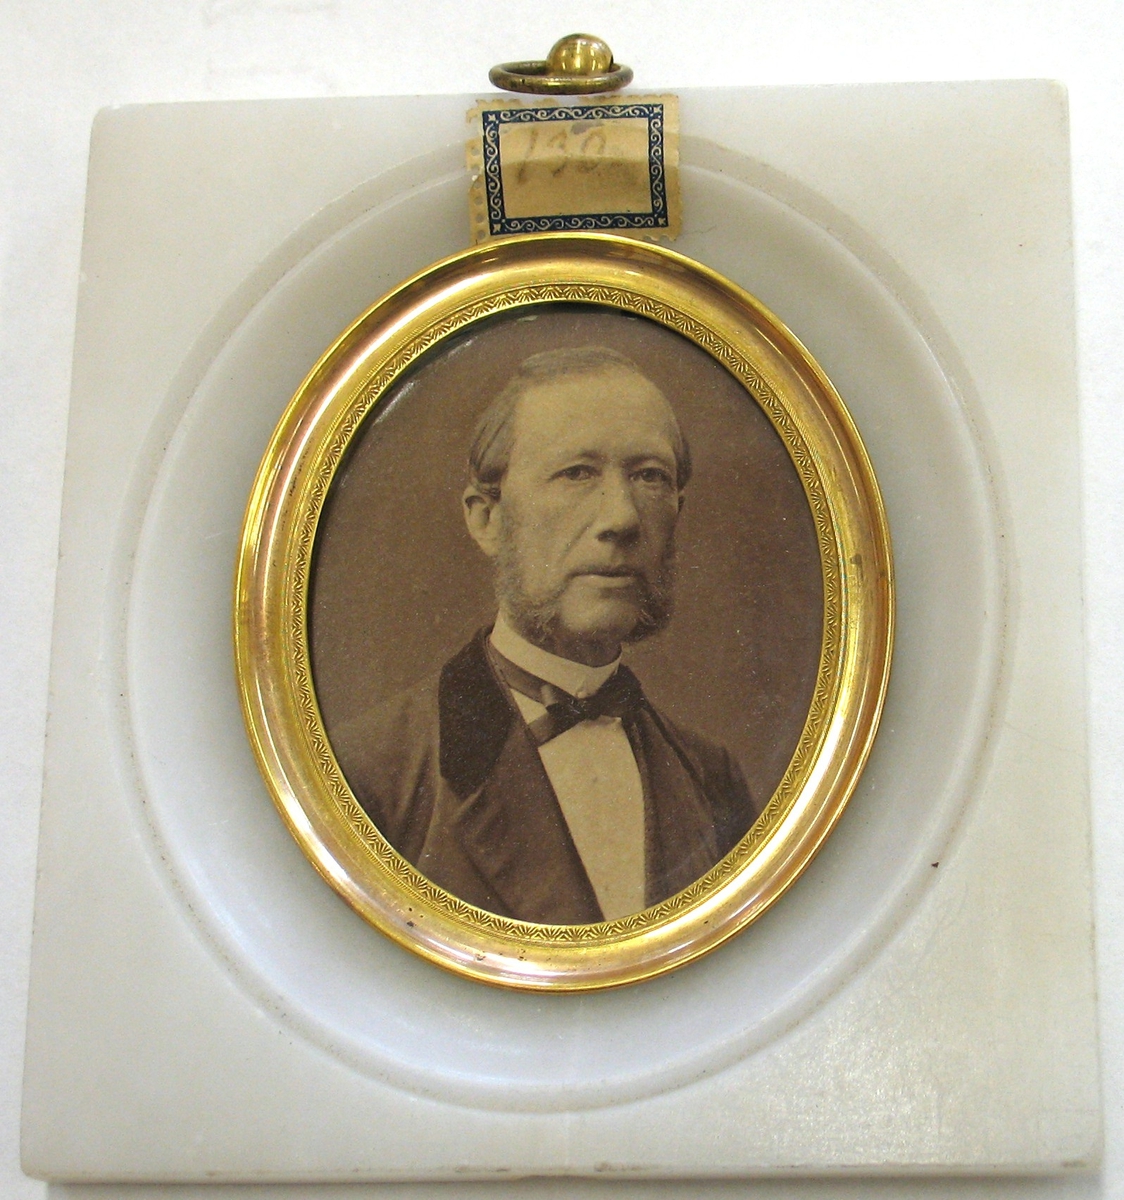 Adolf Andersohn (f. 1820, d. 1887) var handelsman, samlare, filantrop och grundare av Vänersborgs museum.